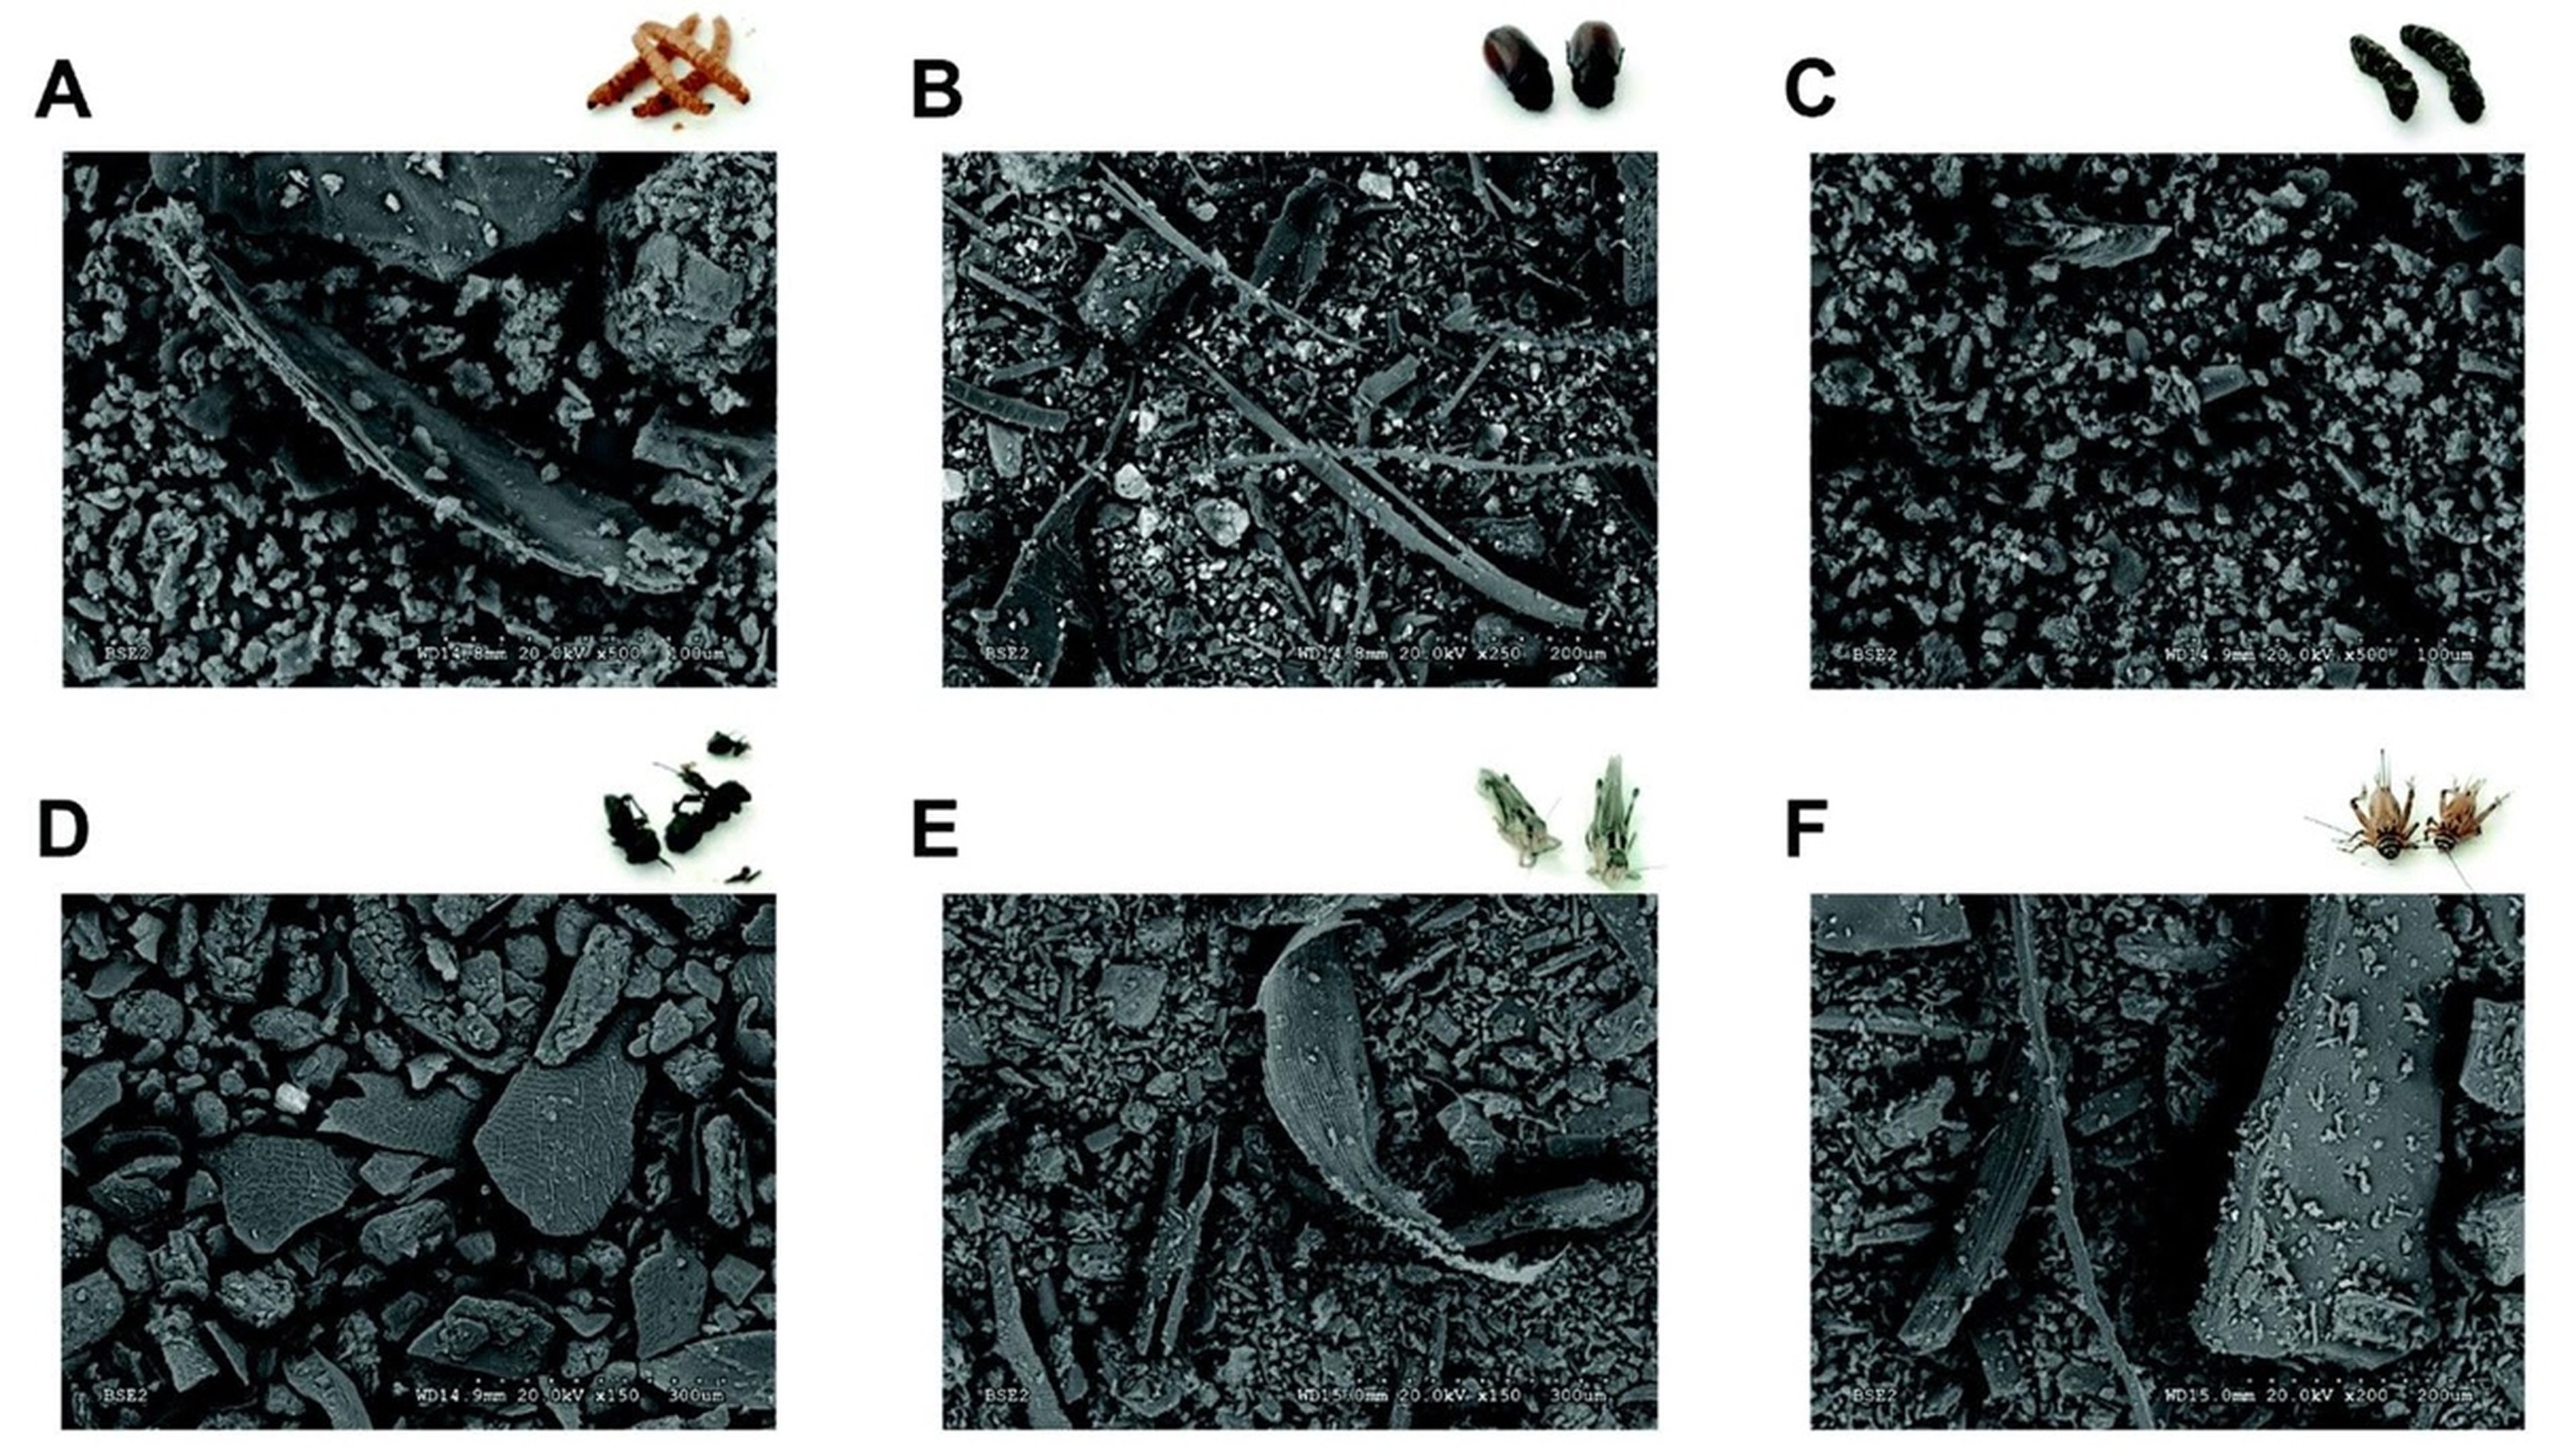 Imagen obtenida con microscopía electrónica de barrido (SEM) de harinas de diferentes insectos: gusano de la harina (A), escarabajo (B), oruga (C), hormiga (D), langosta (E) y grillo (F).